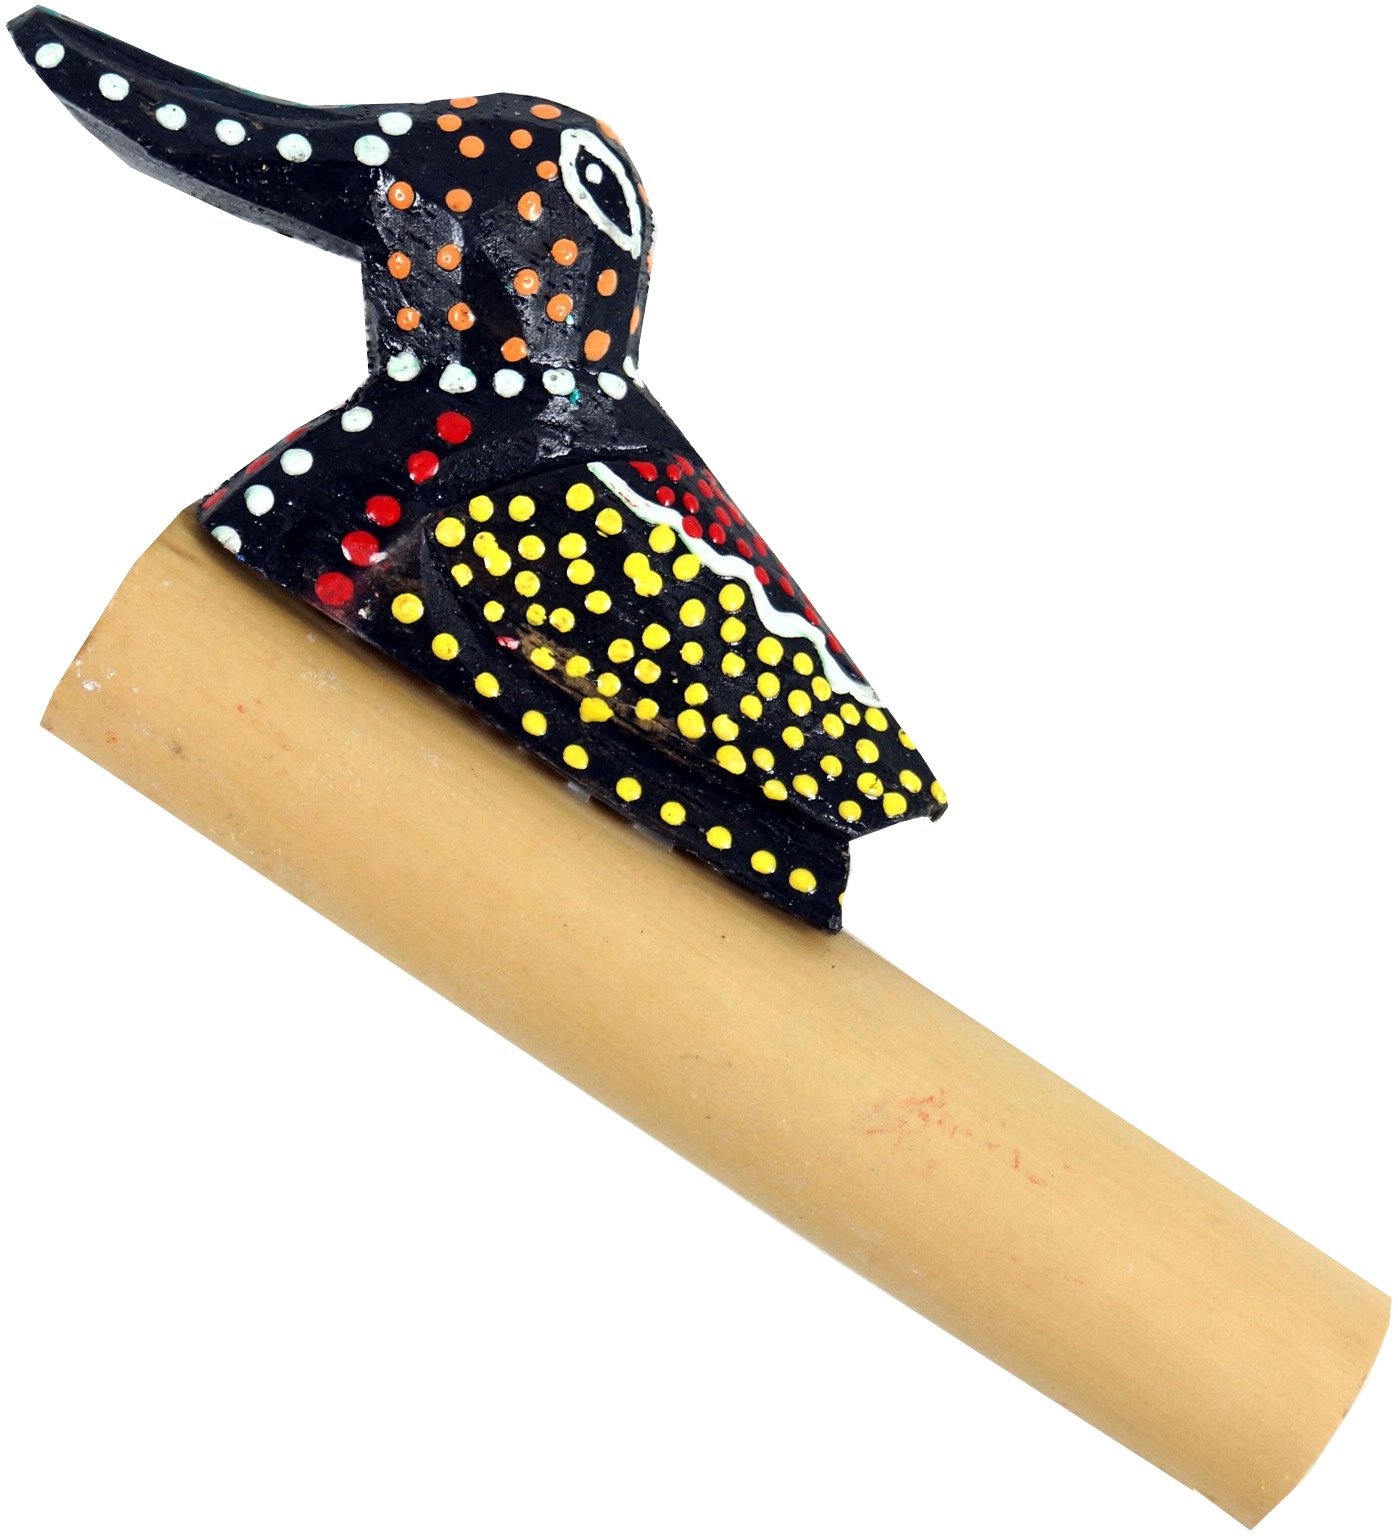 GURU SHOP Musikinstrument aus Holz, Handgearbeitet Pfeife, Flöte, Spaß Trompete - Bambus Tröte 3, Braun, 6x13x2,5 cm, Musikinstrumente